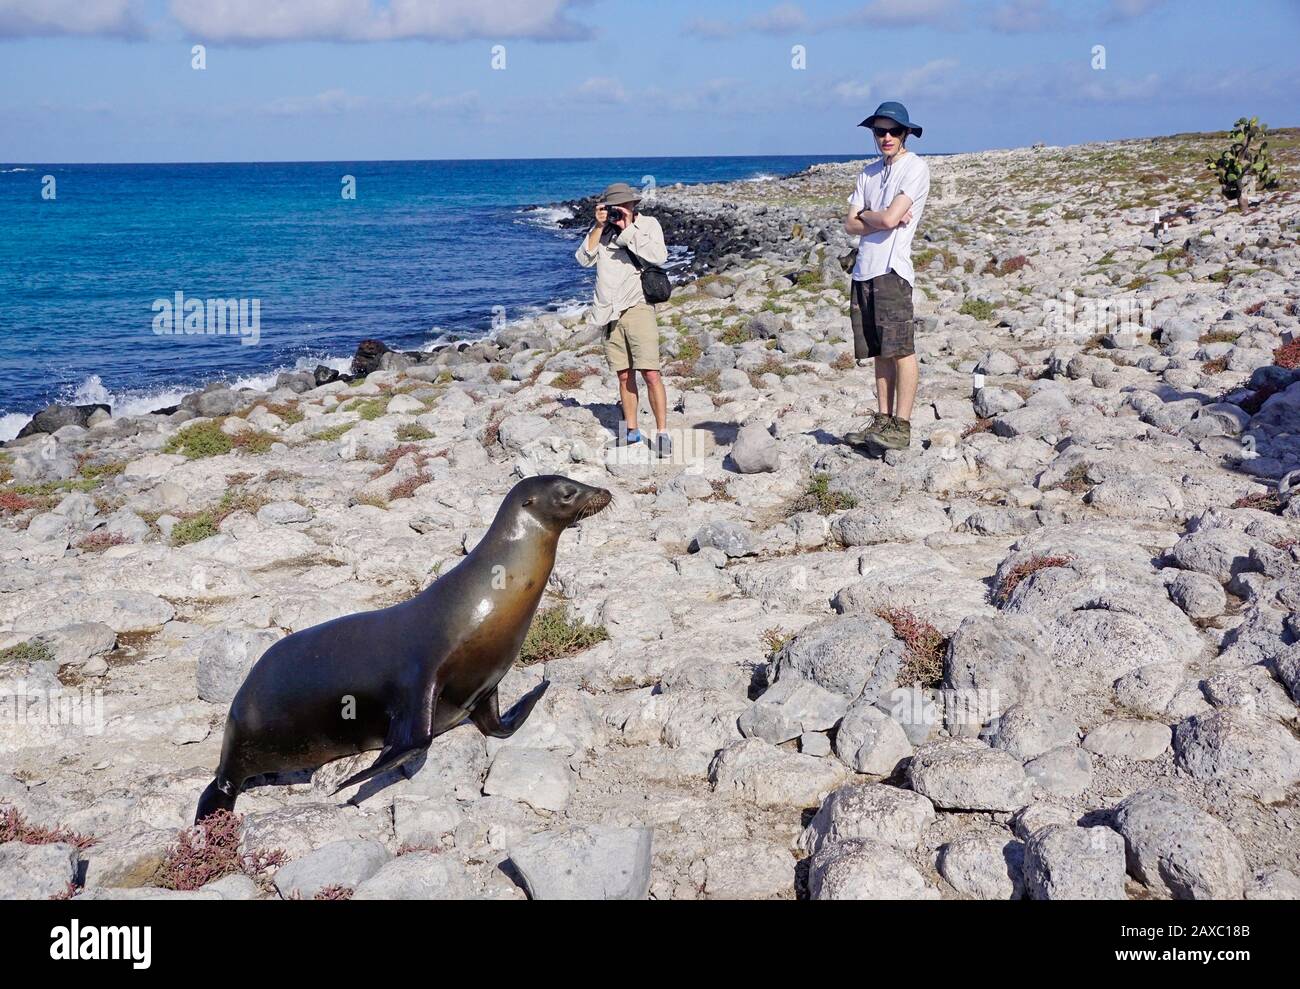 Turista en las Islas Galápagos fotografiando un león marino en la costa rocosa. Foto de stock